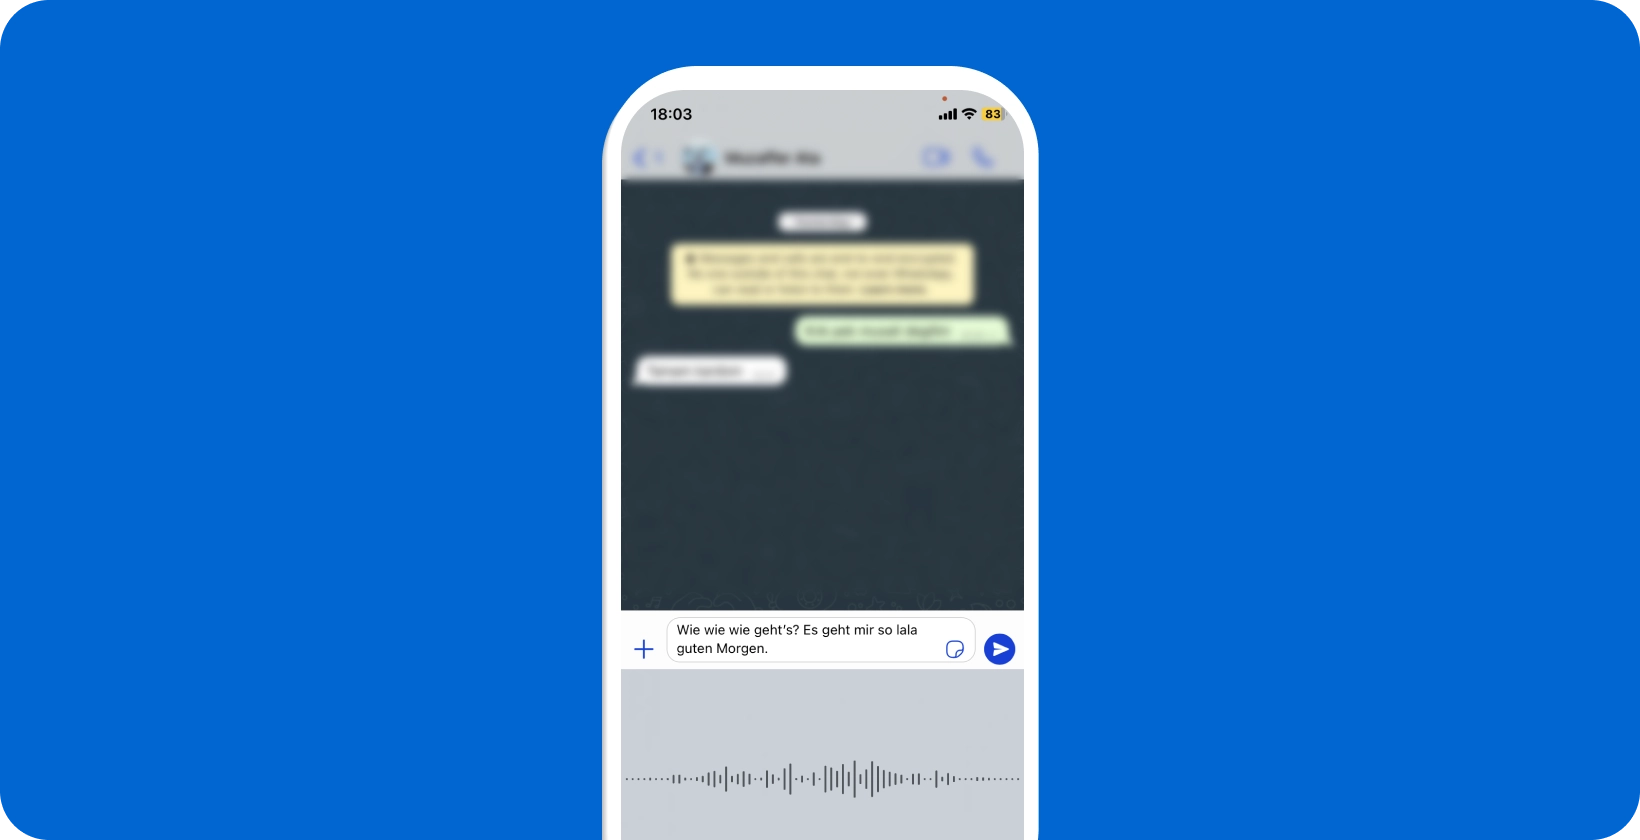 Okostelefon, amely WhatsApp folyamatban lévő hangdiktálást mutatja, bemutatva a valós idejű beszéd-szöveg átalakítást.